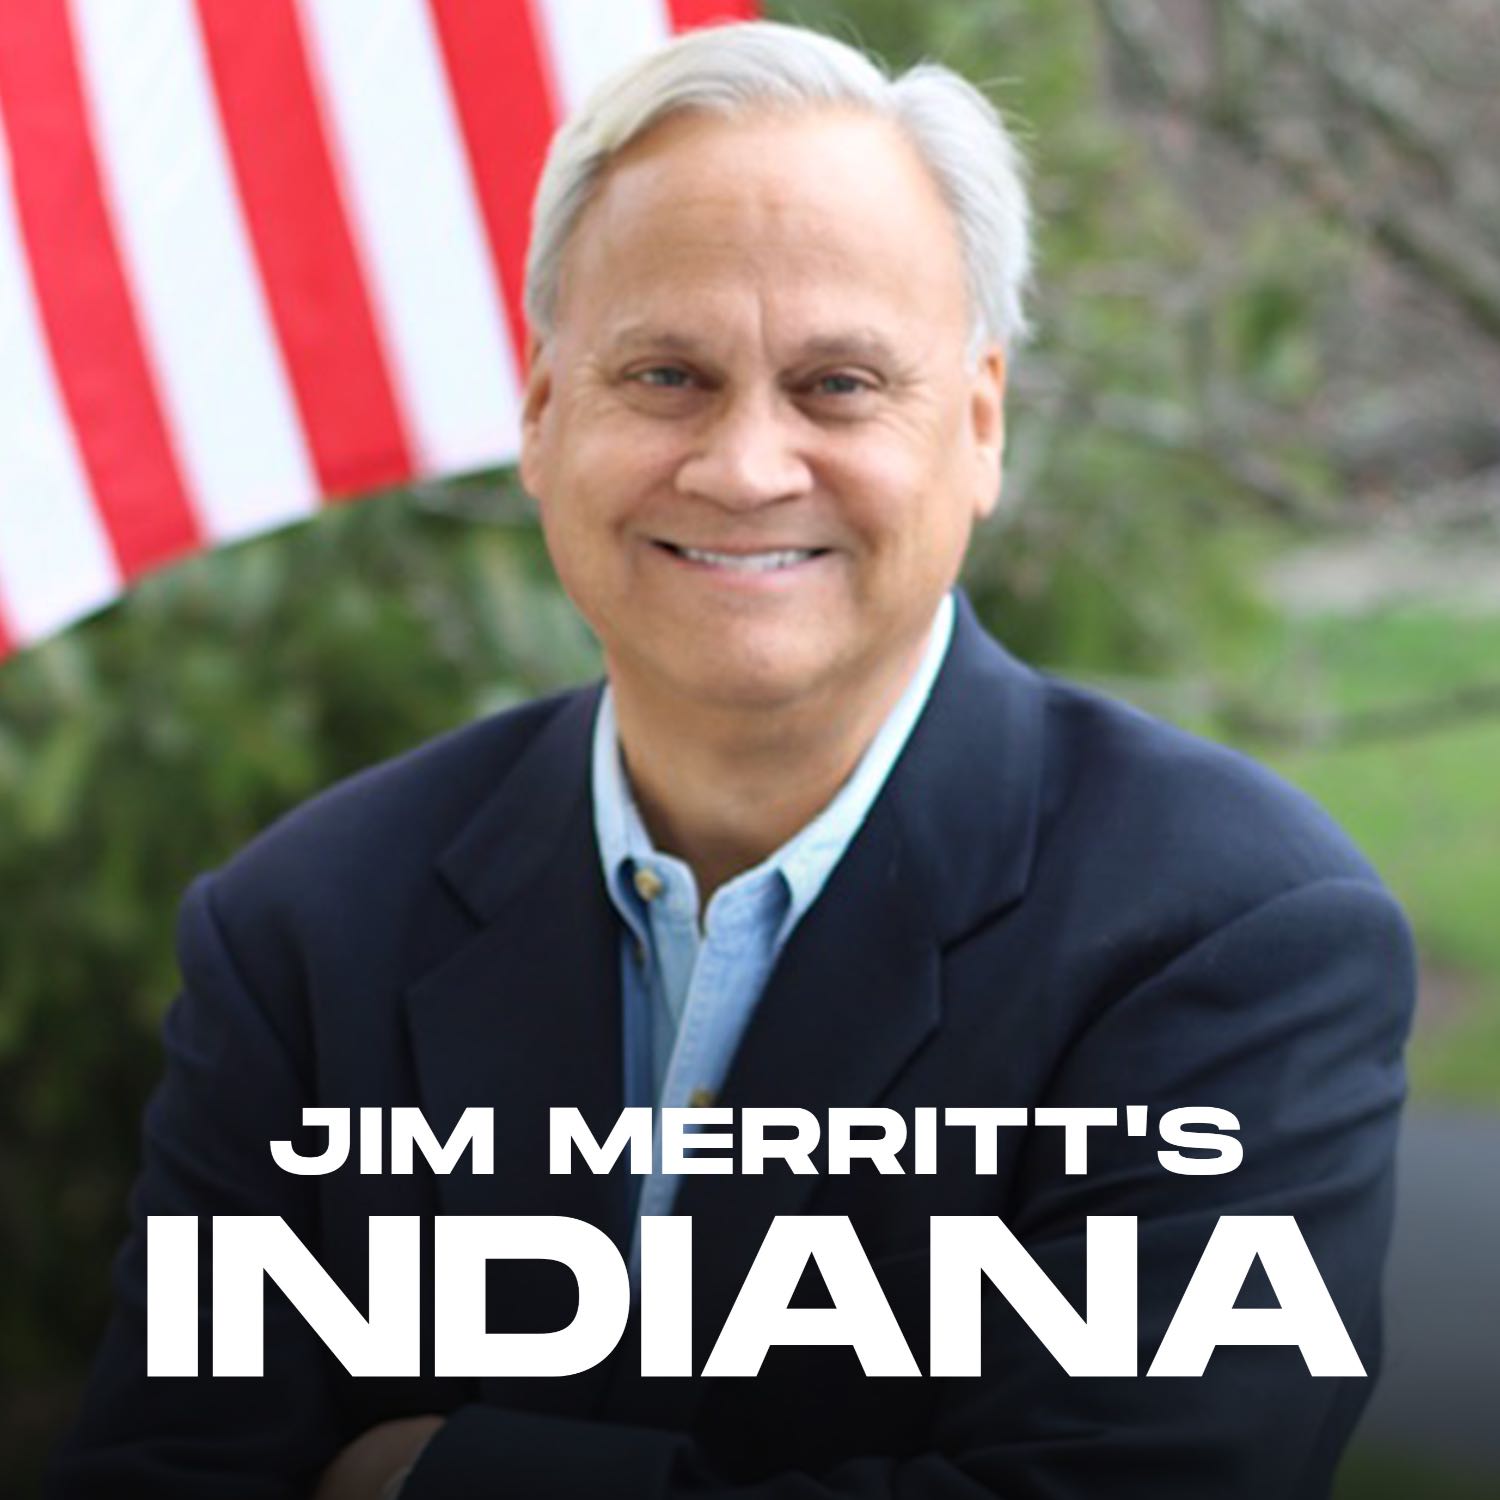 Jim Merritt’s Indiana